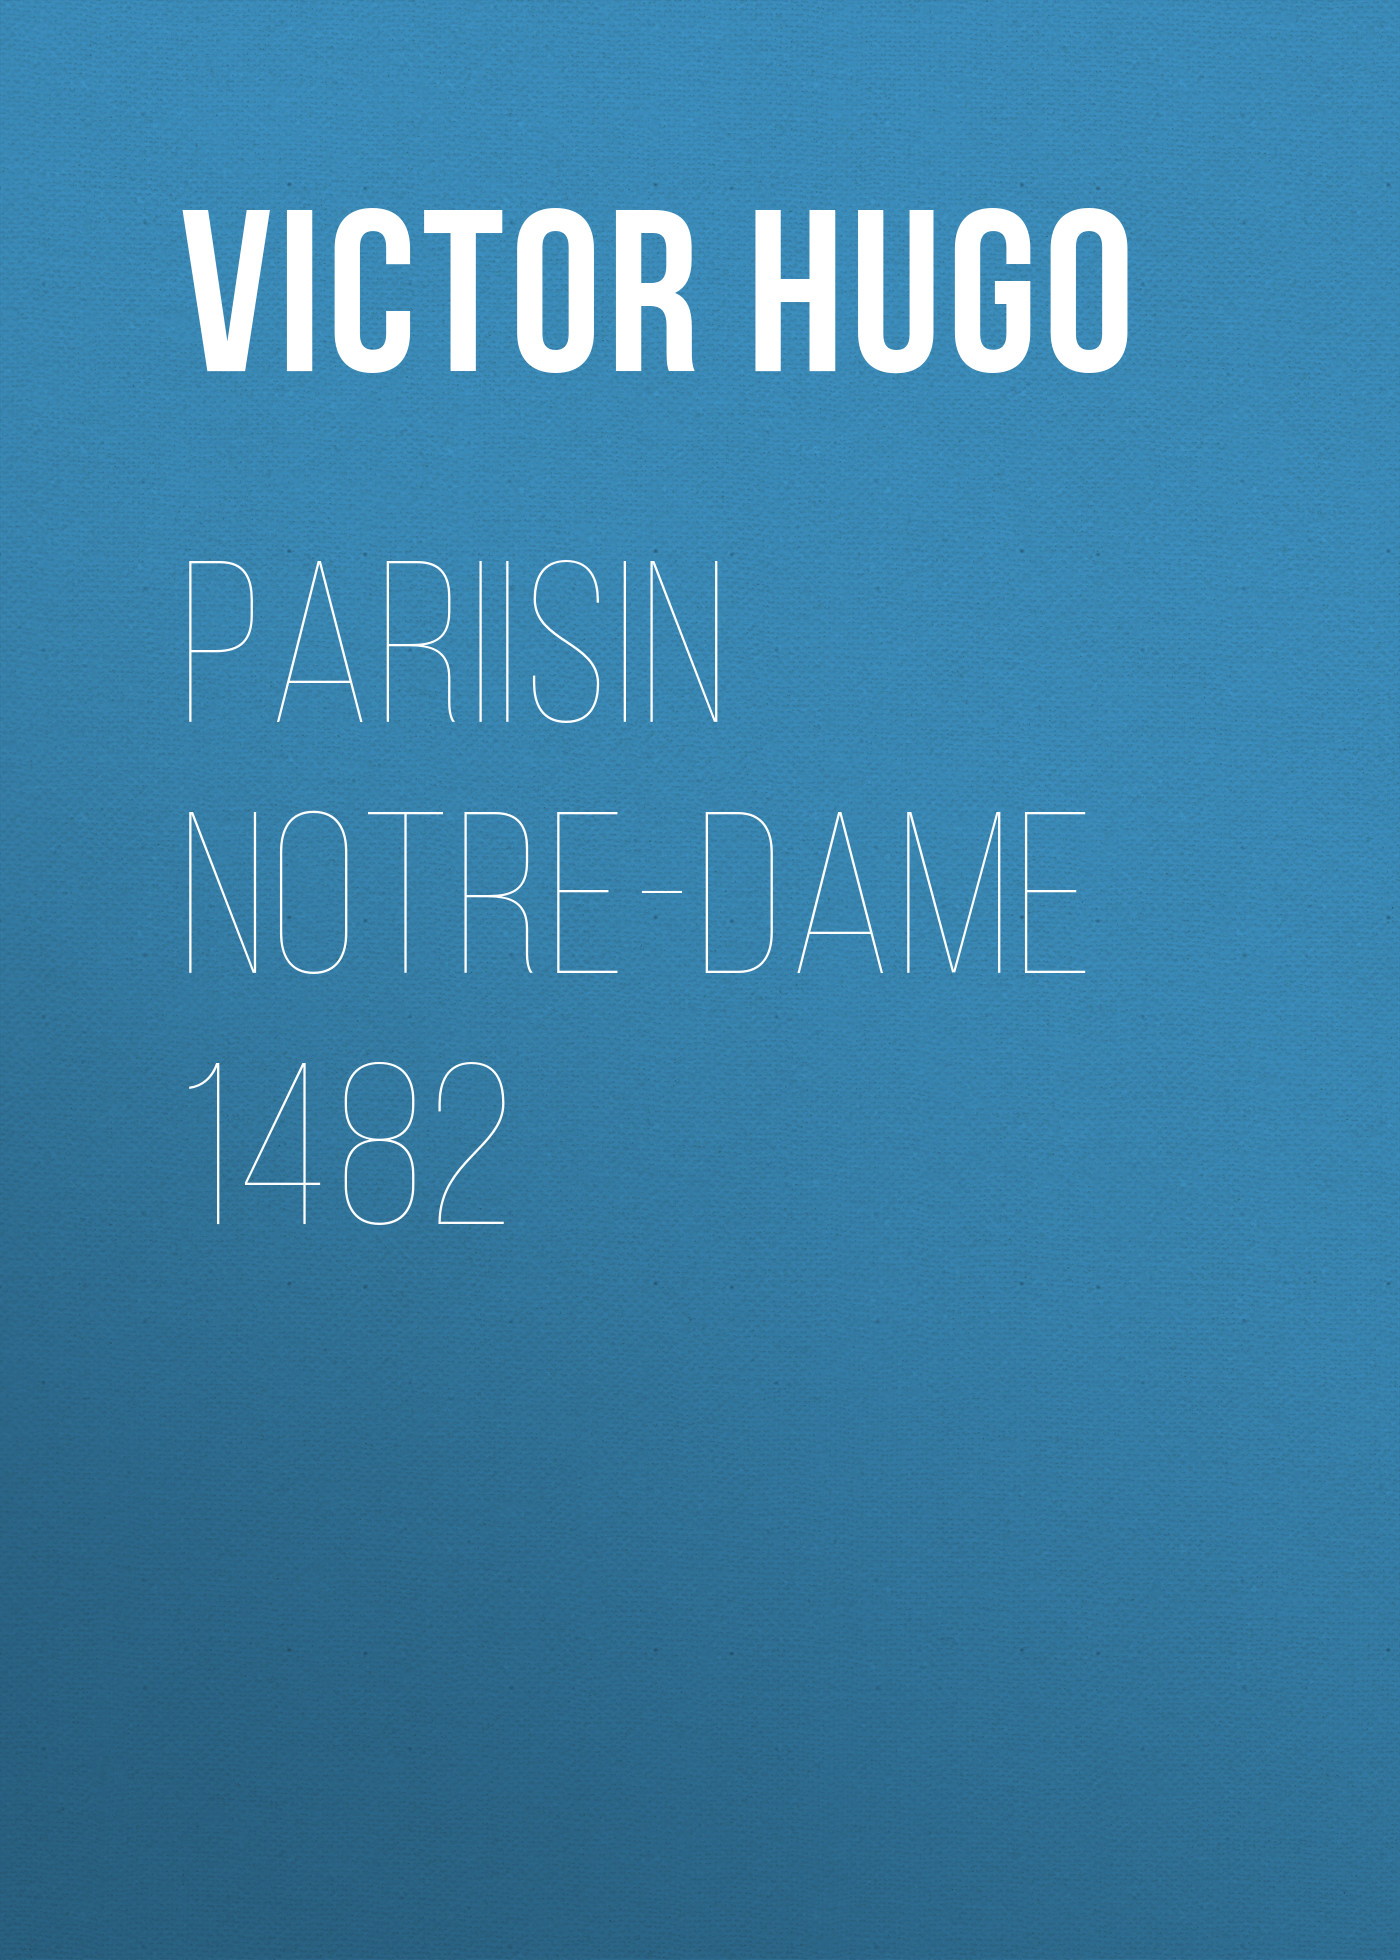 Книга Pariisin Notre-Dame 1482 из серии , созданная Victor Hugo, может относится к жанру Литература 19 века, Зарубежная старинная литература, Зарубежная классика. Стоимость электронной книги Pariisin Notre-Dame 1482 с идентификатором 25230444 составляет 0 руб.